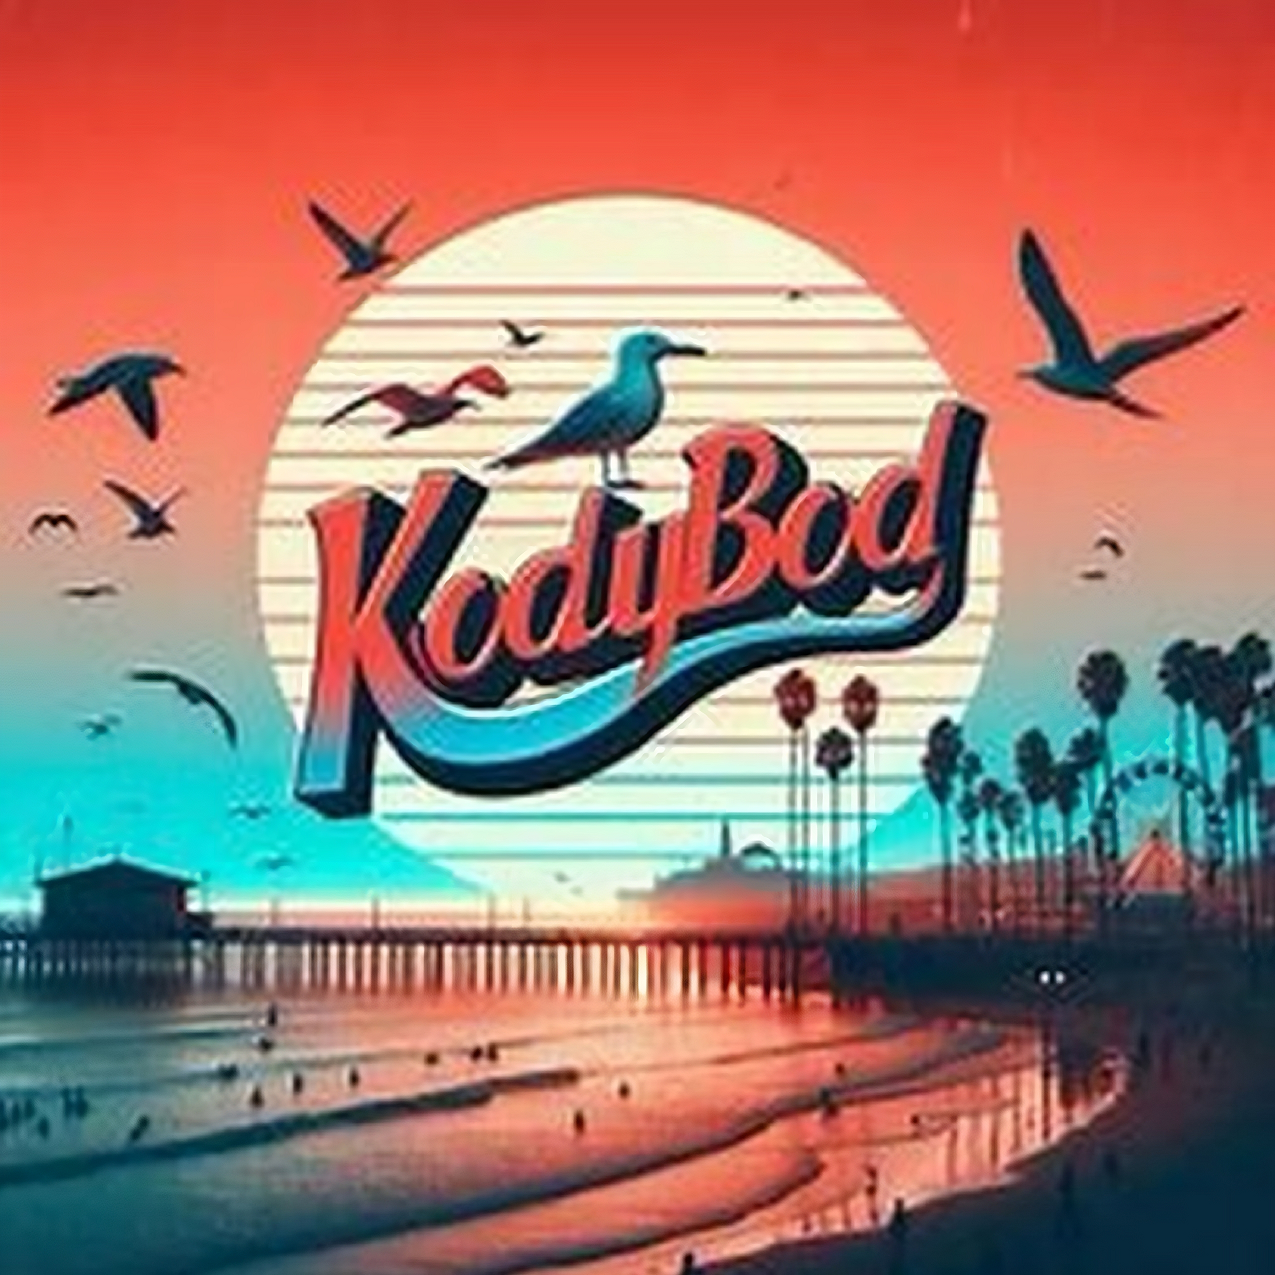 Kodybod – an unforgettable musical journey